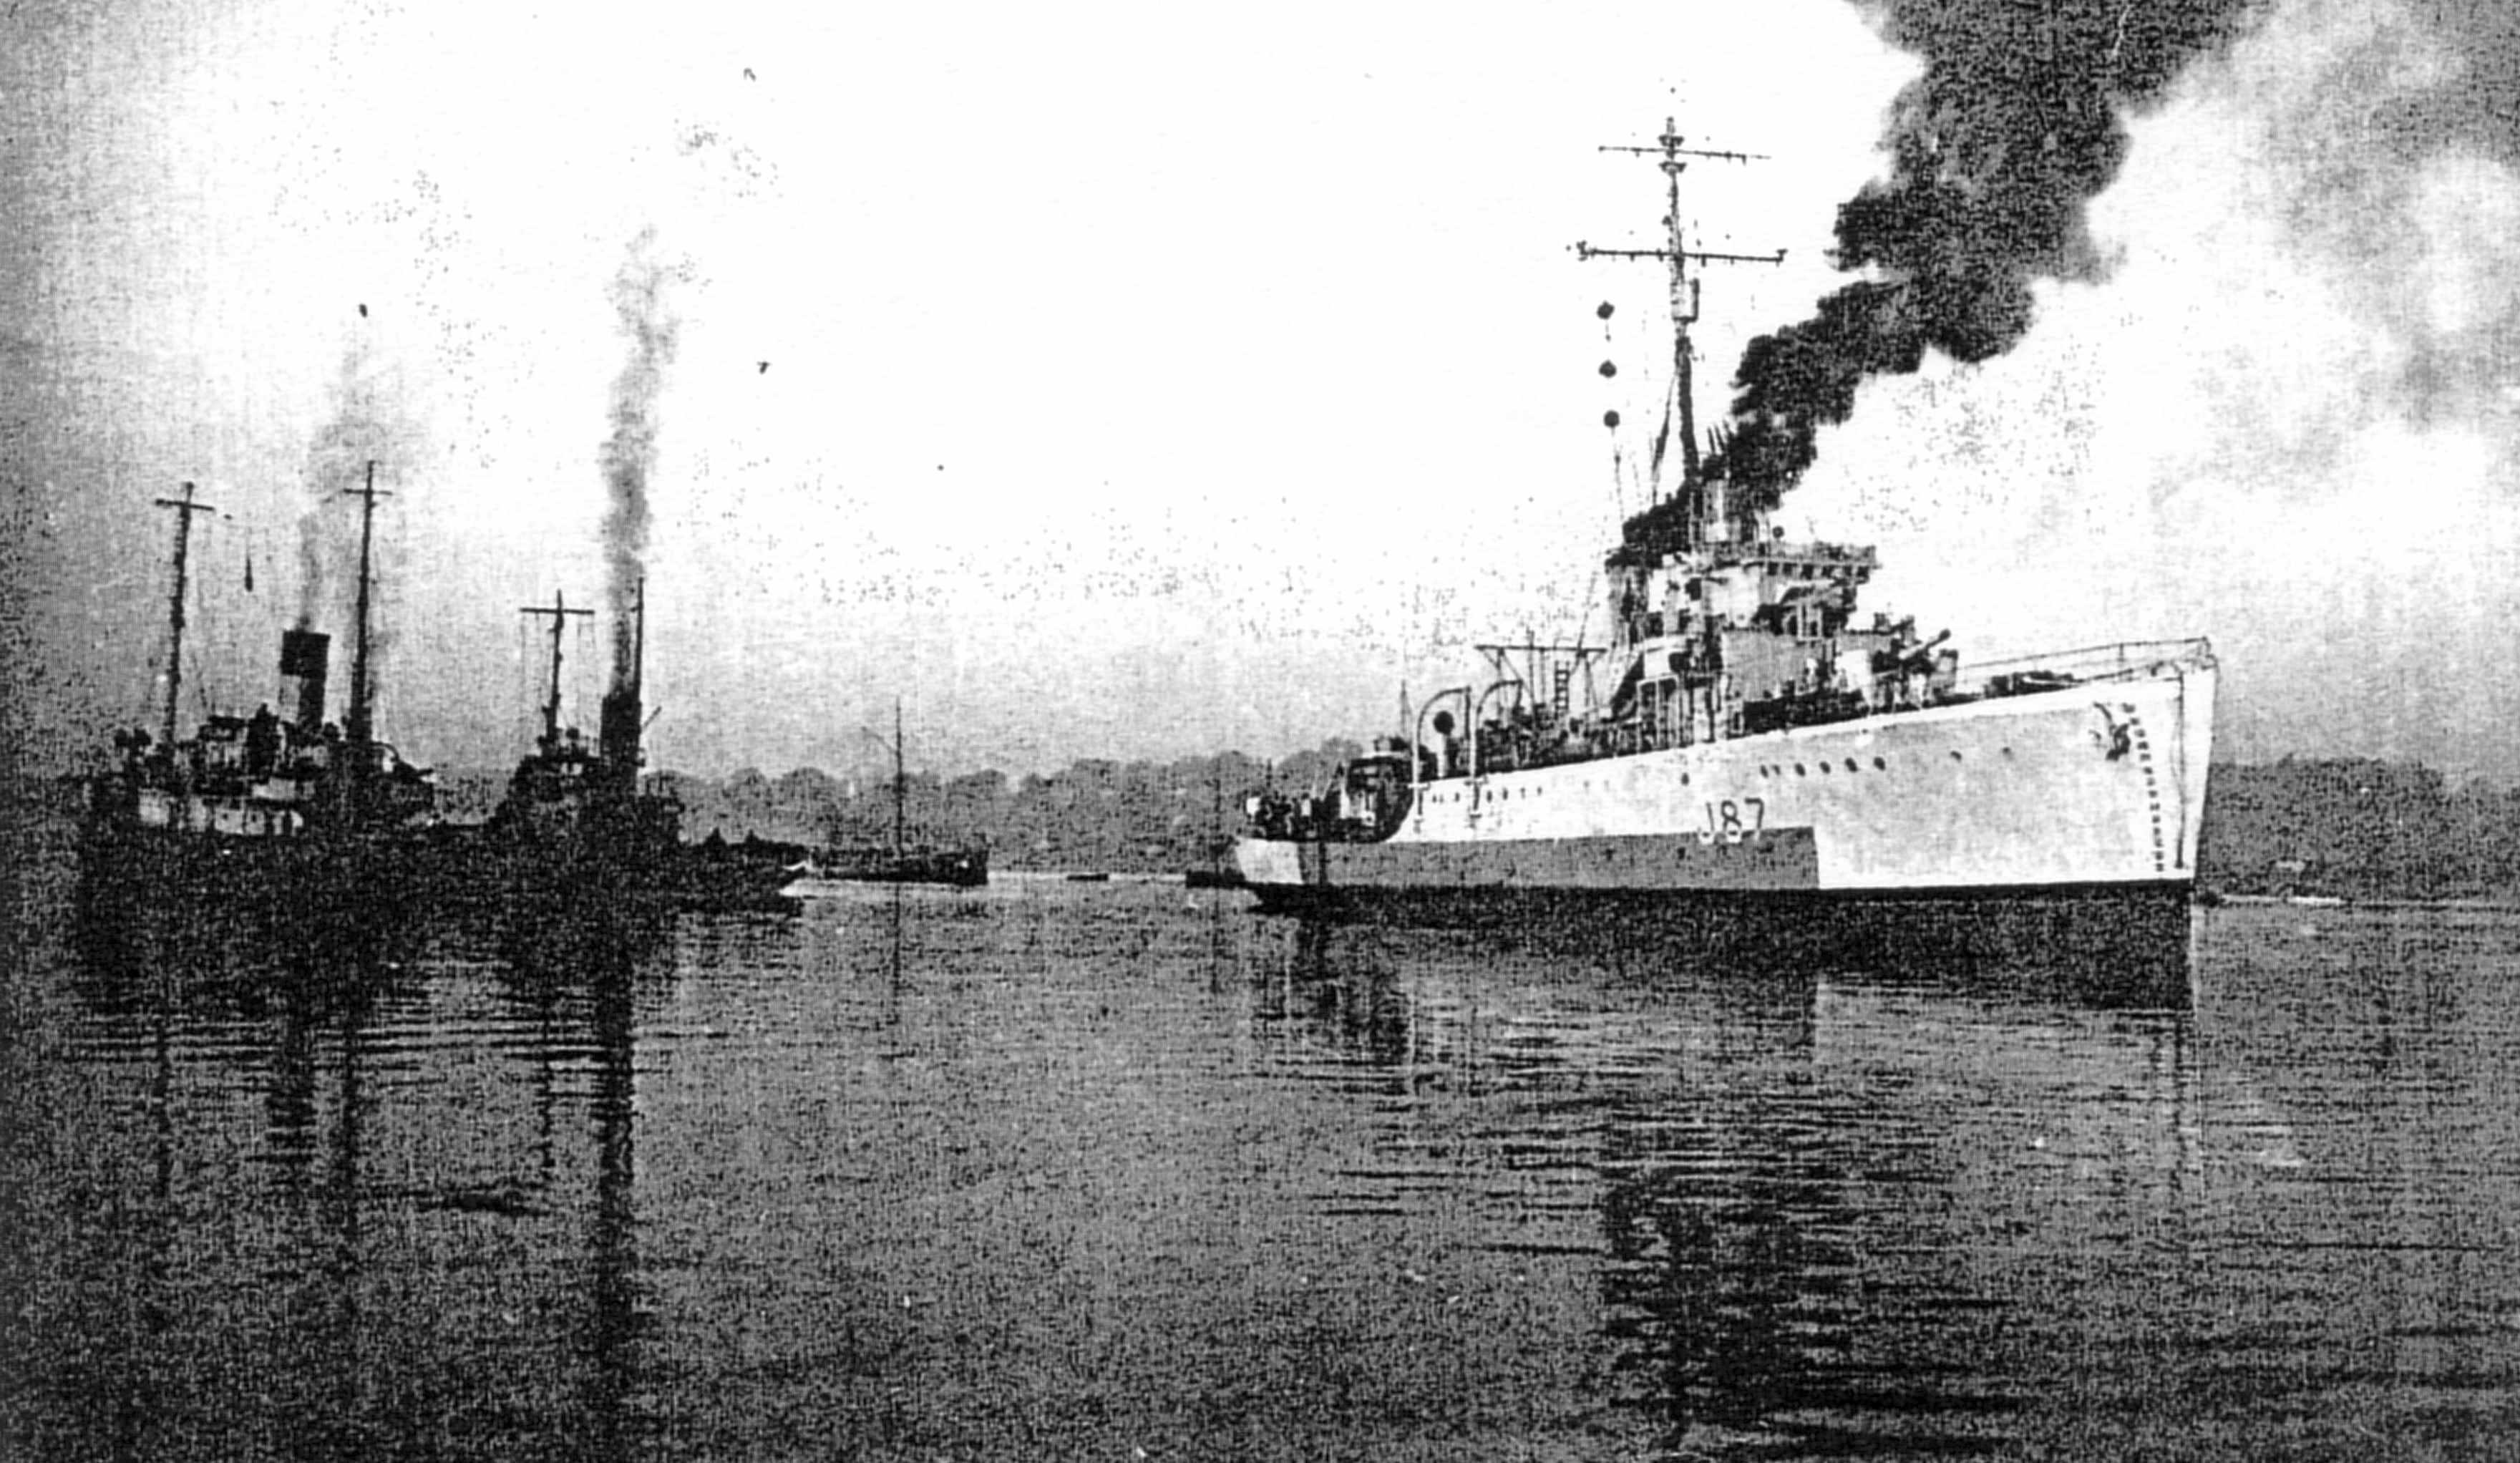 HMS Speedwell aground at Ipswich